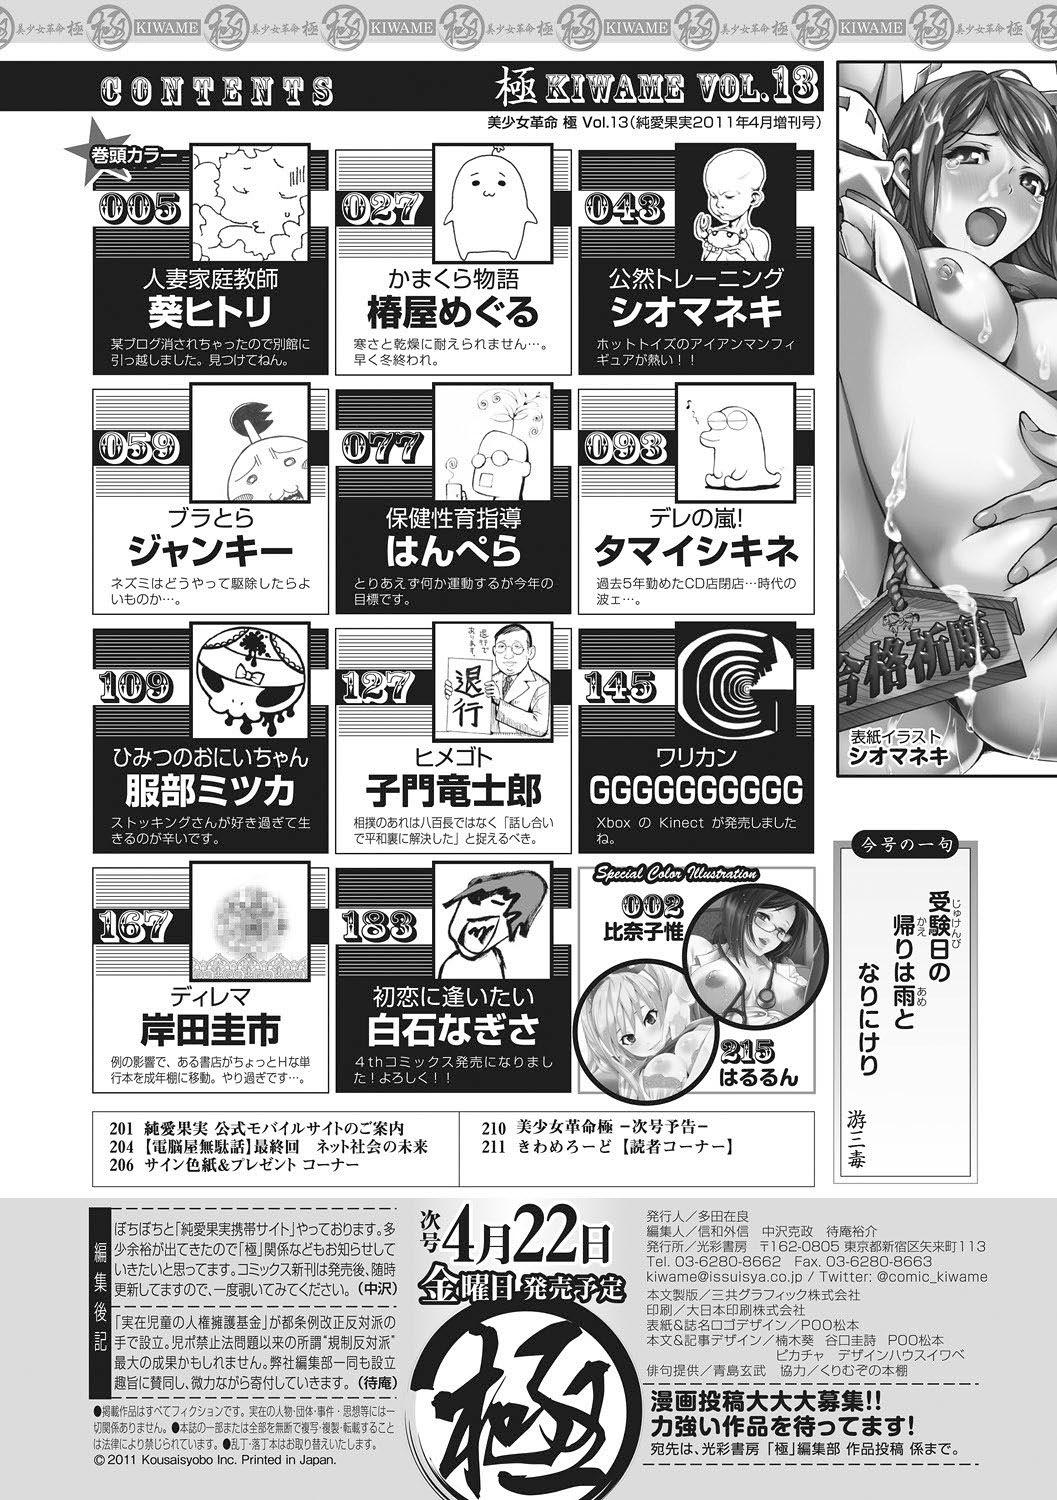 Bishoujo Kakumei KIWAME 2011-04 Vol. 13 200